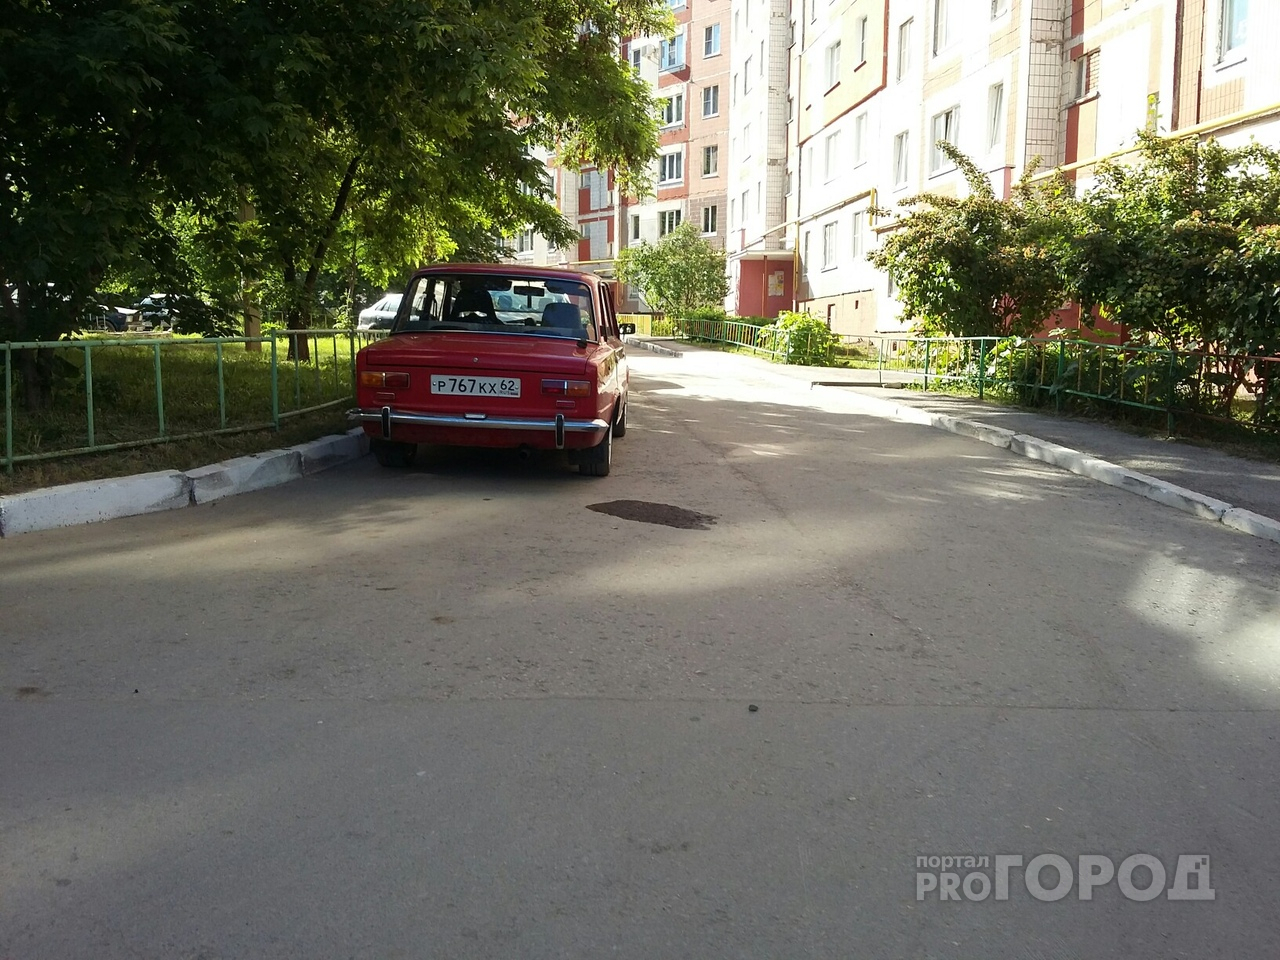 Очевидцы: на улице Зубковой неизвестные сливают бензин